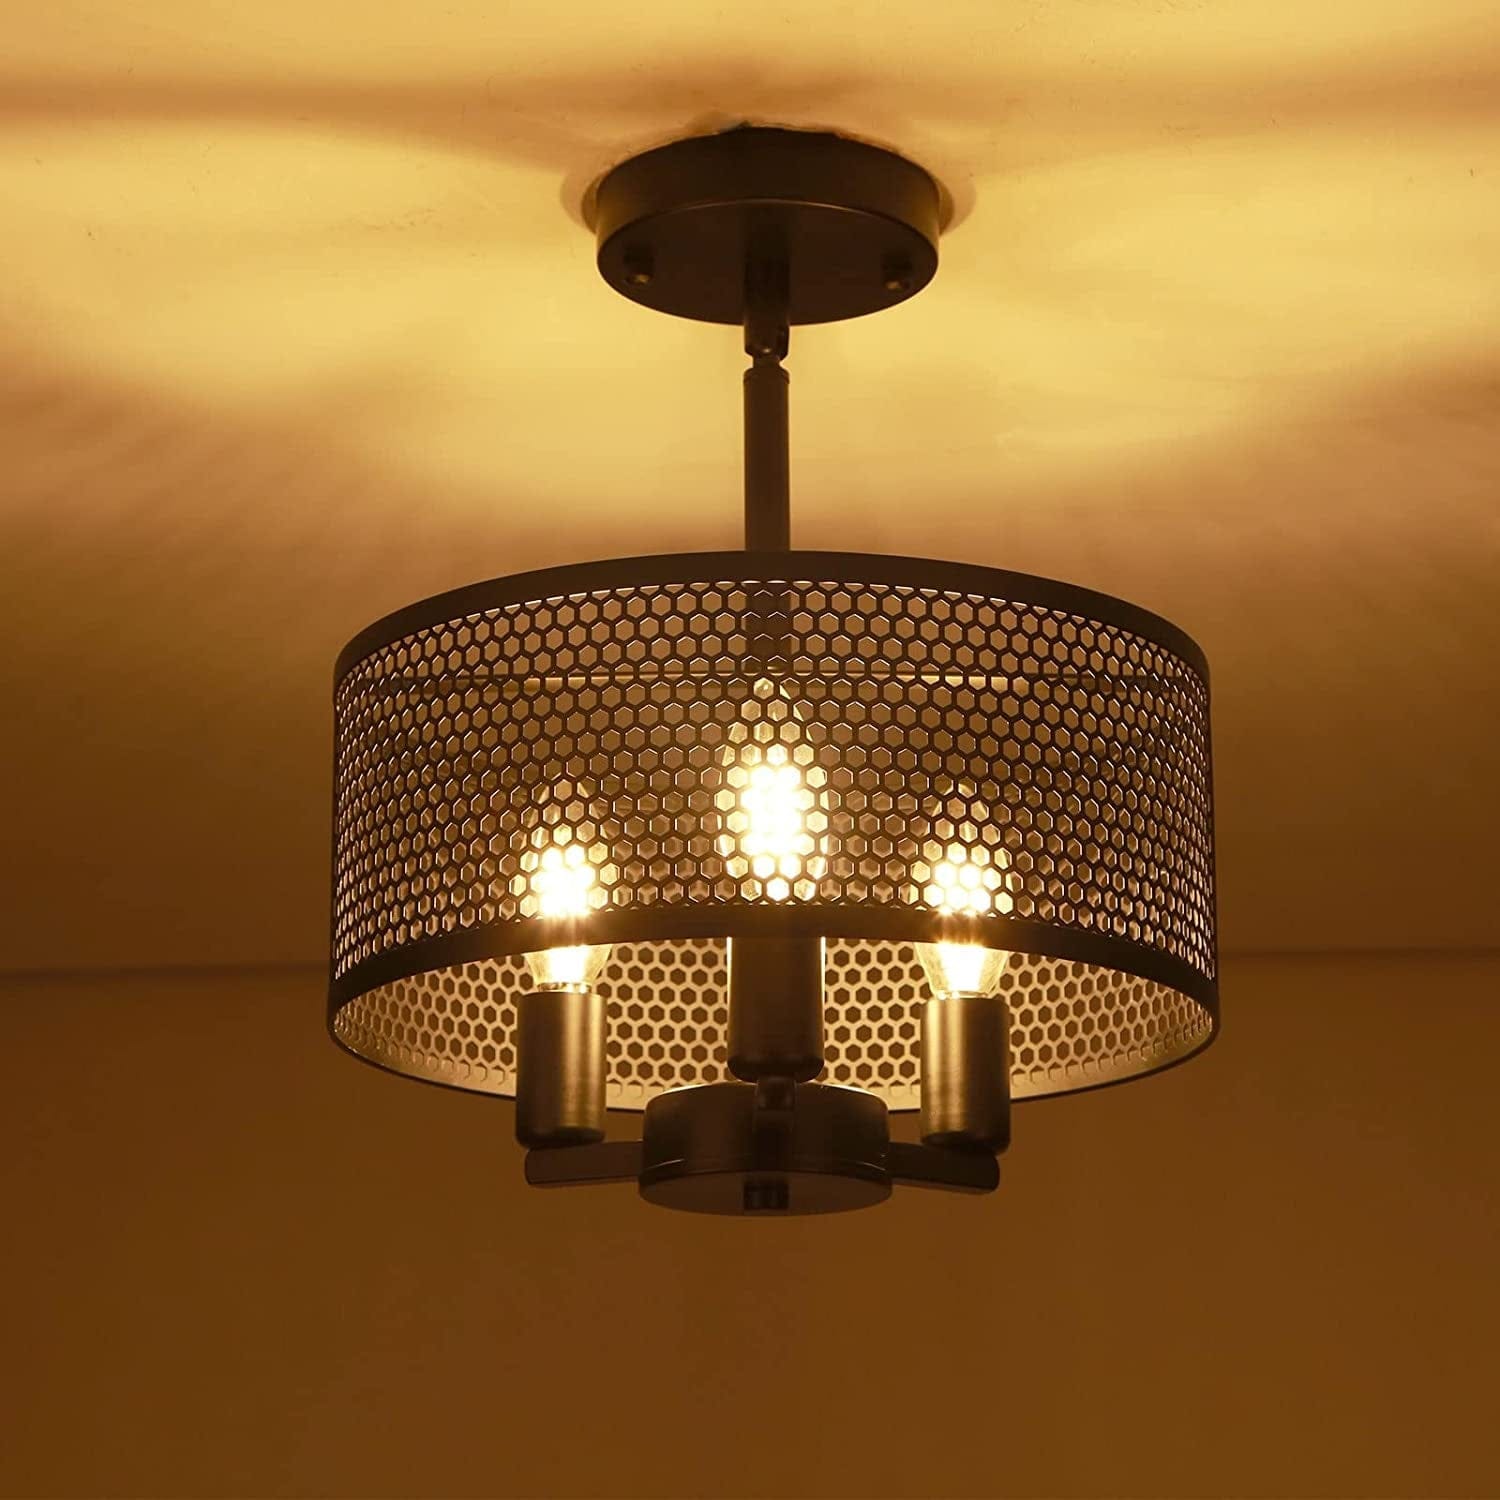 3-Light Industrial Ceiling Light, Modern Black Semi Flush Mount